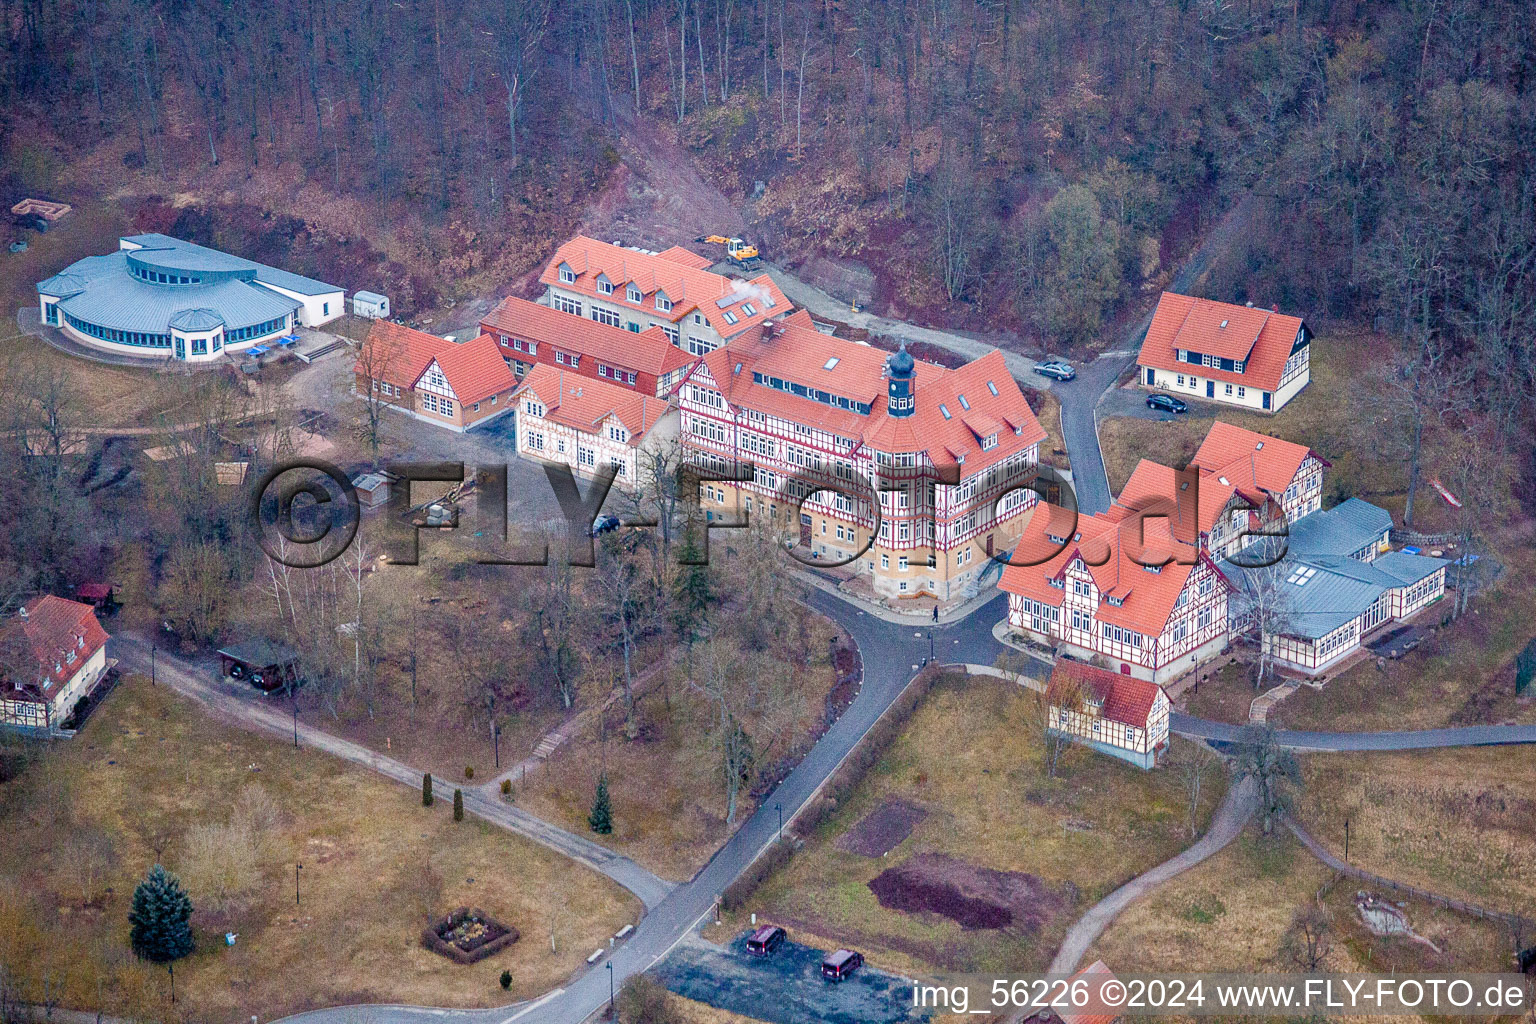 Vue aérienne de Bâtiment scolaire de l'internat de l'école Hermann Lietz dans la forêt de Thuringe à Westhausen dans le département Thuringe, Allemagne